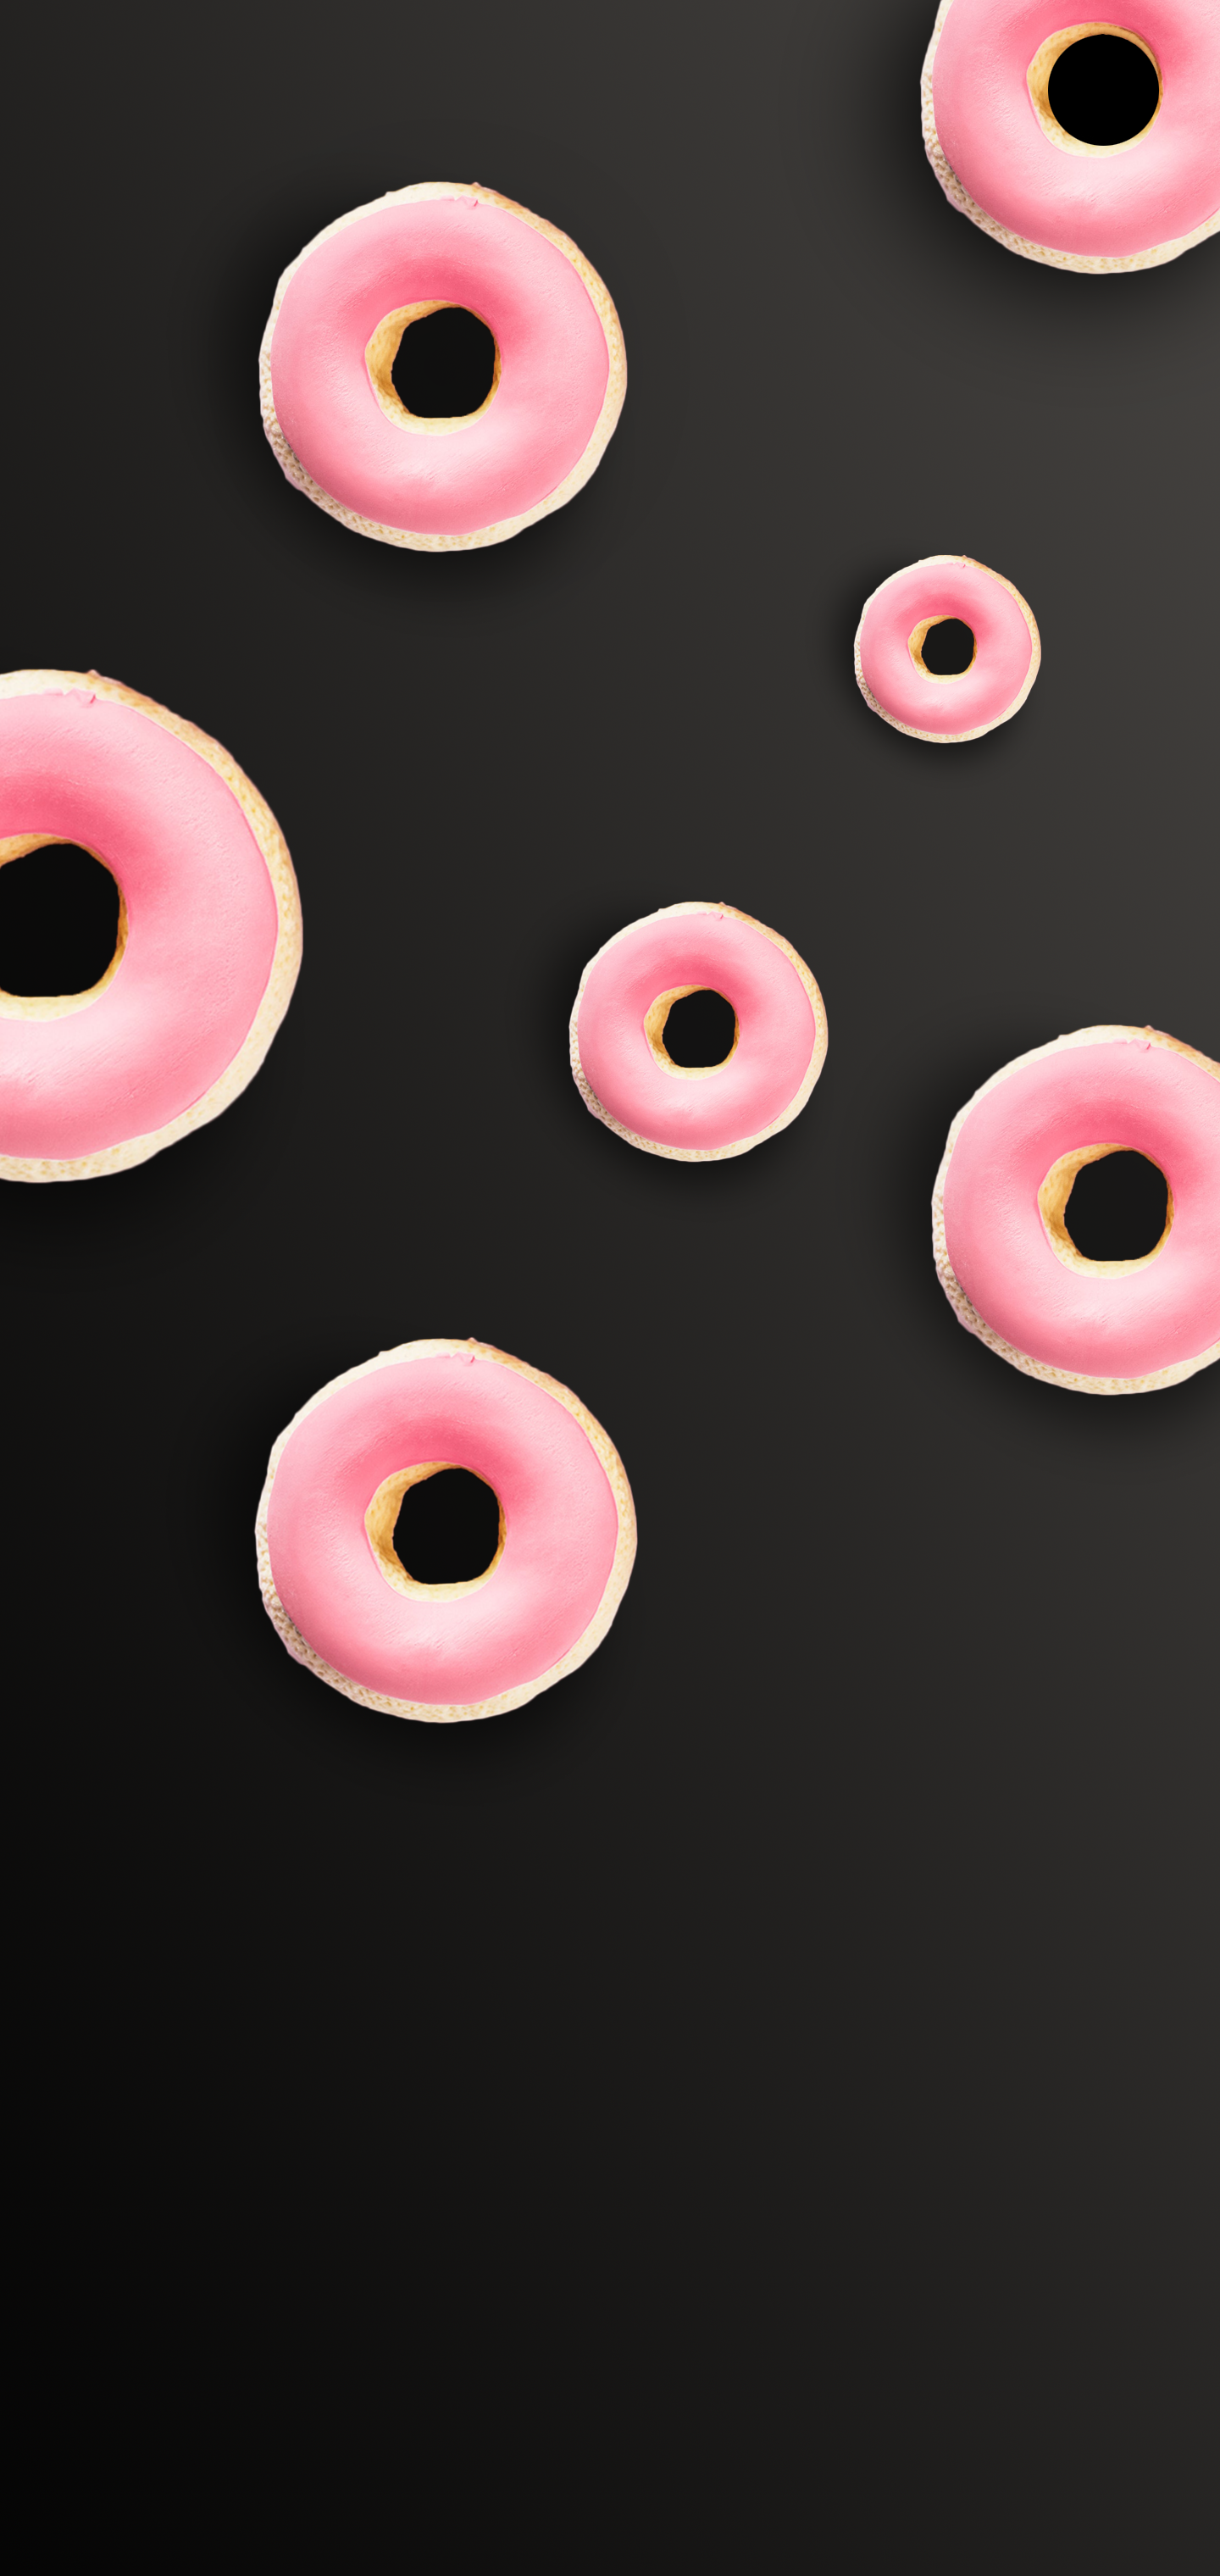 Doughnut wallpaper for Galaxy S10E, S10